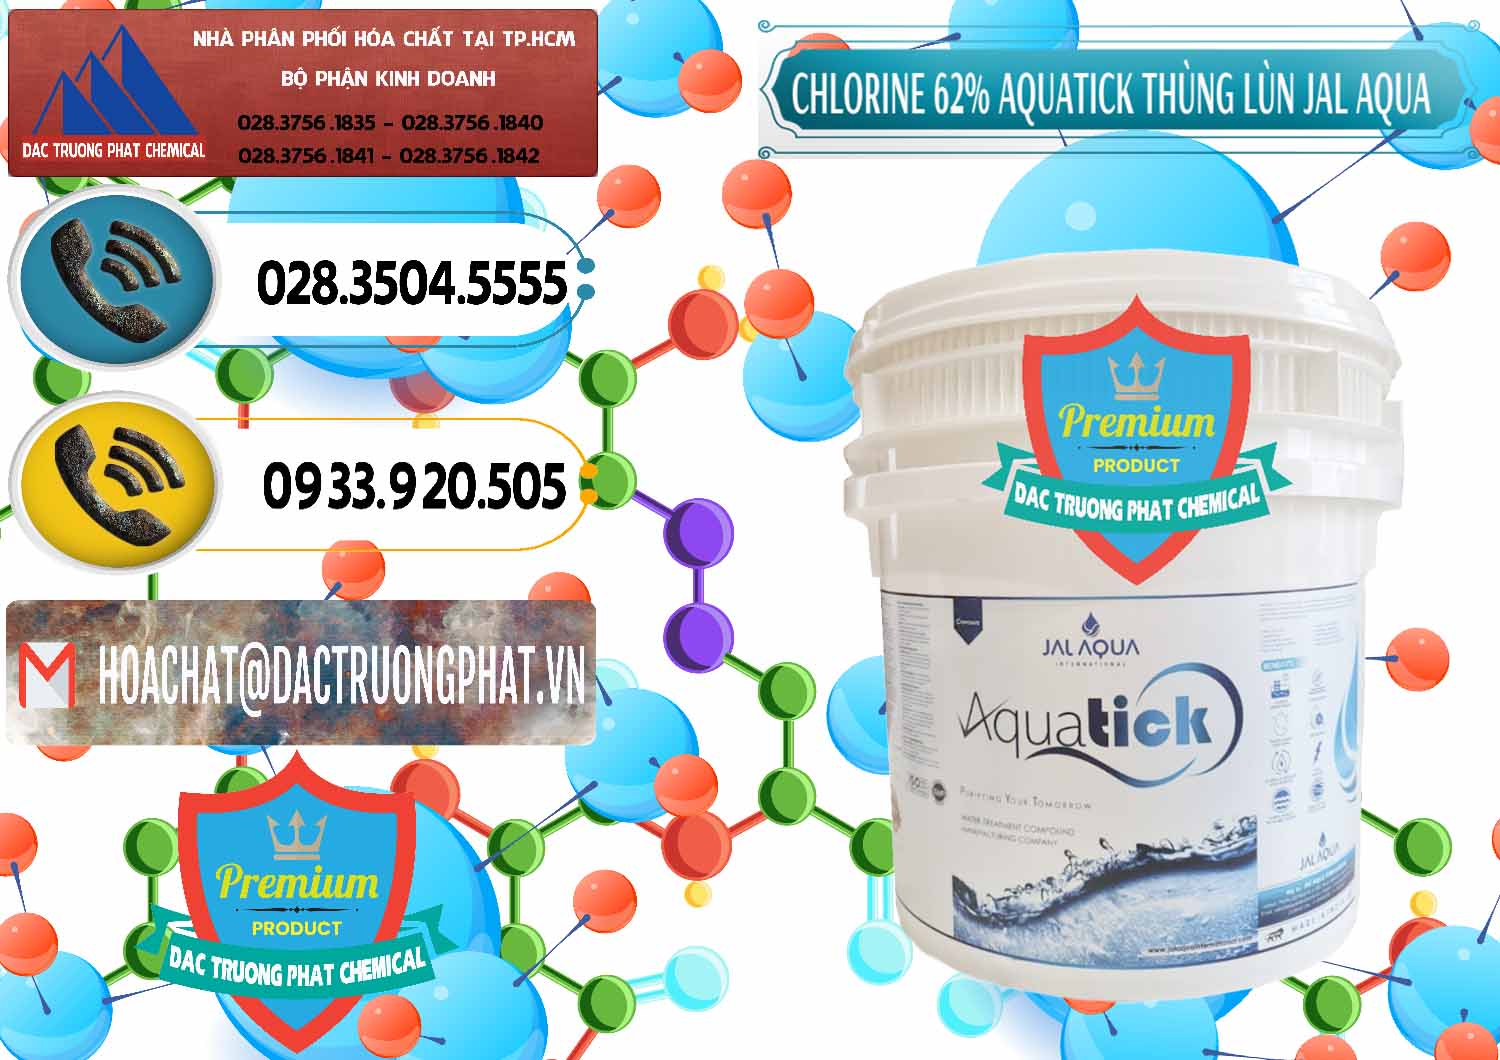 Đơn vị cung cấp _ bán Chlorine – Clorin 62% Aquatick Thùng Lùn Jal Aqua Ấn Độ India - 0238 - Nơi chuyên nhập khẩu - phân phối hóa chất tại TP.HCM - hoachatdetnhuom.vn